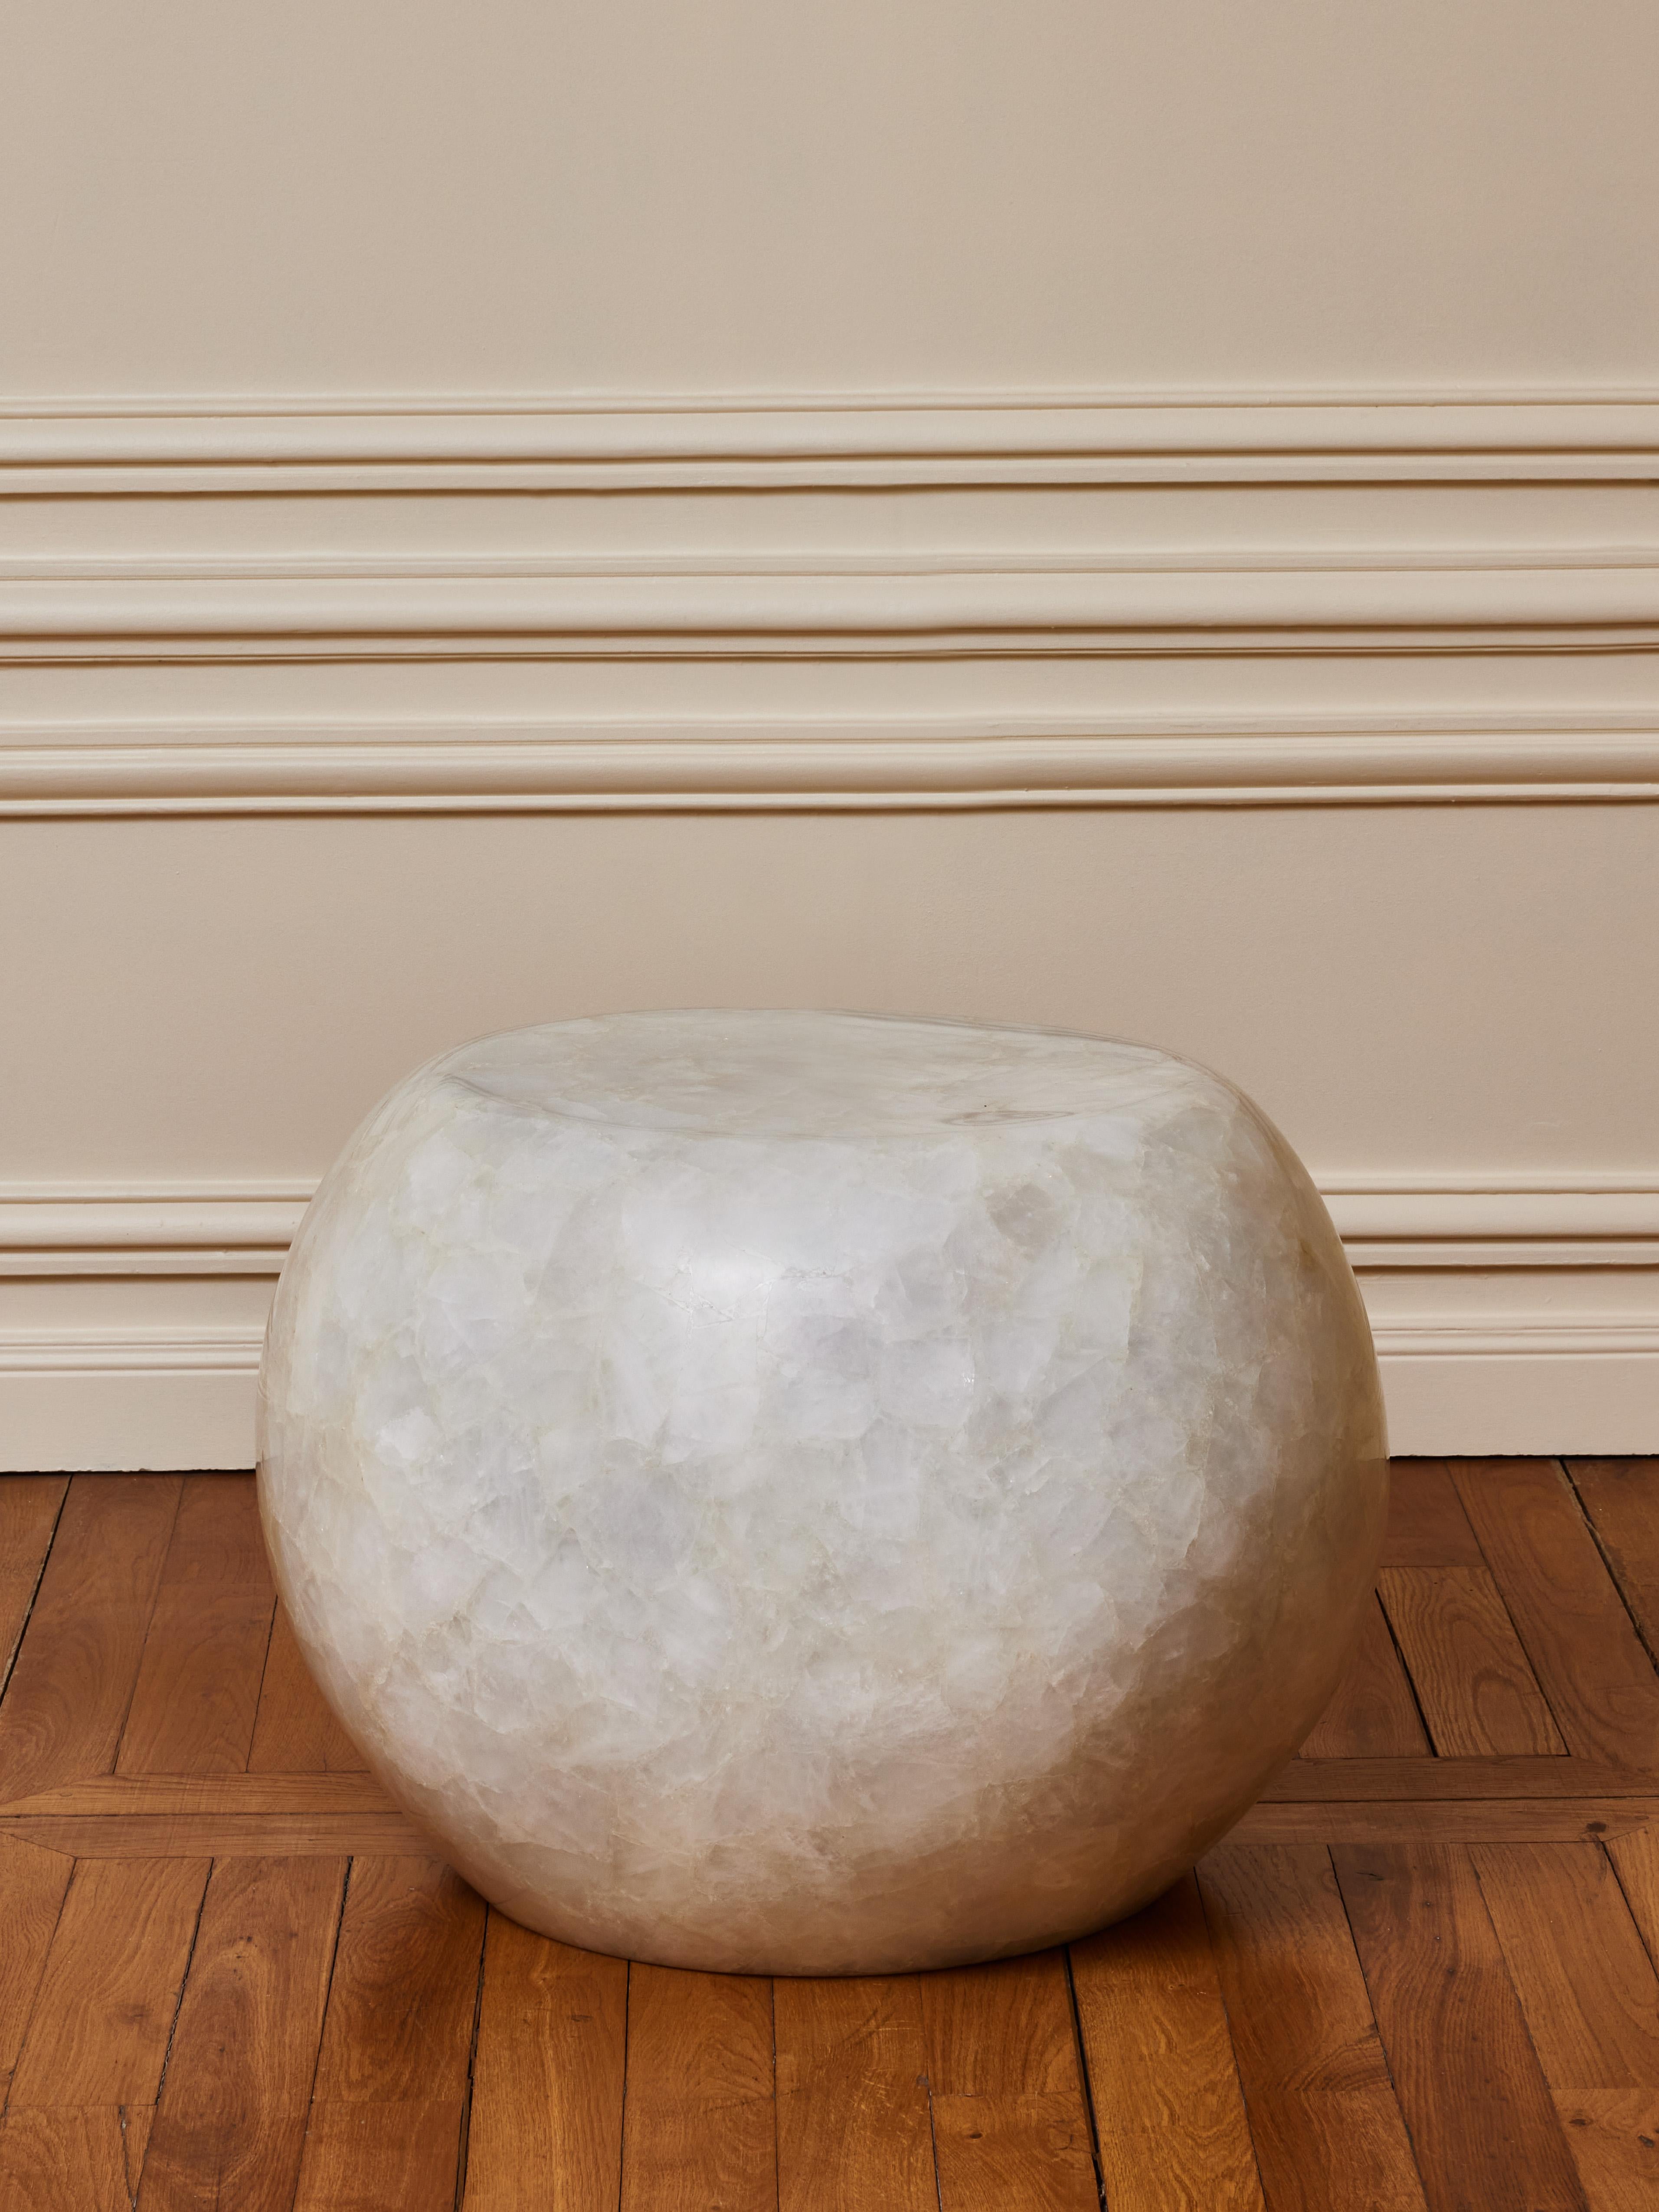 Superb pedestal in sculpted rock crystal.
Creation by Studio Glustin.
France, 2023.
